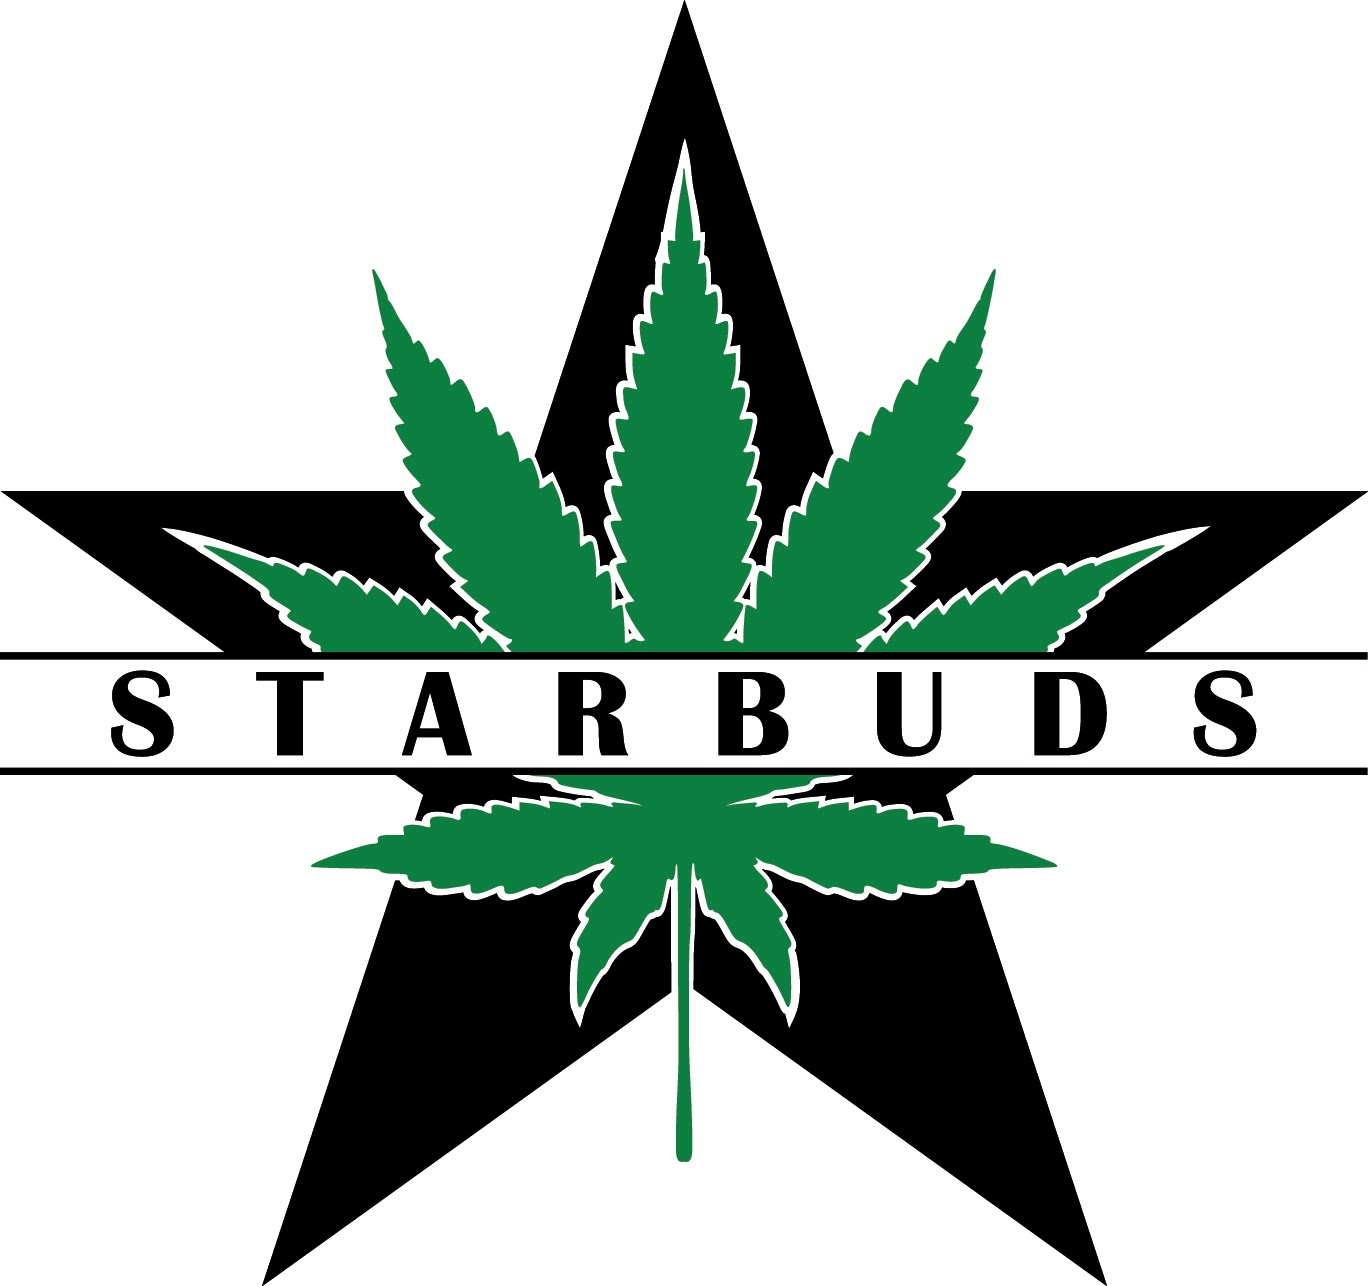 Starbuds_Logo_Black_Green.jpg detail image